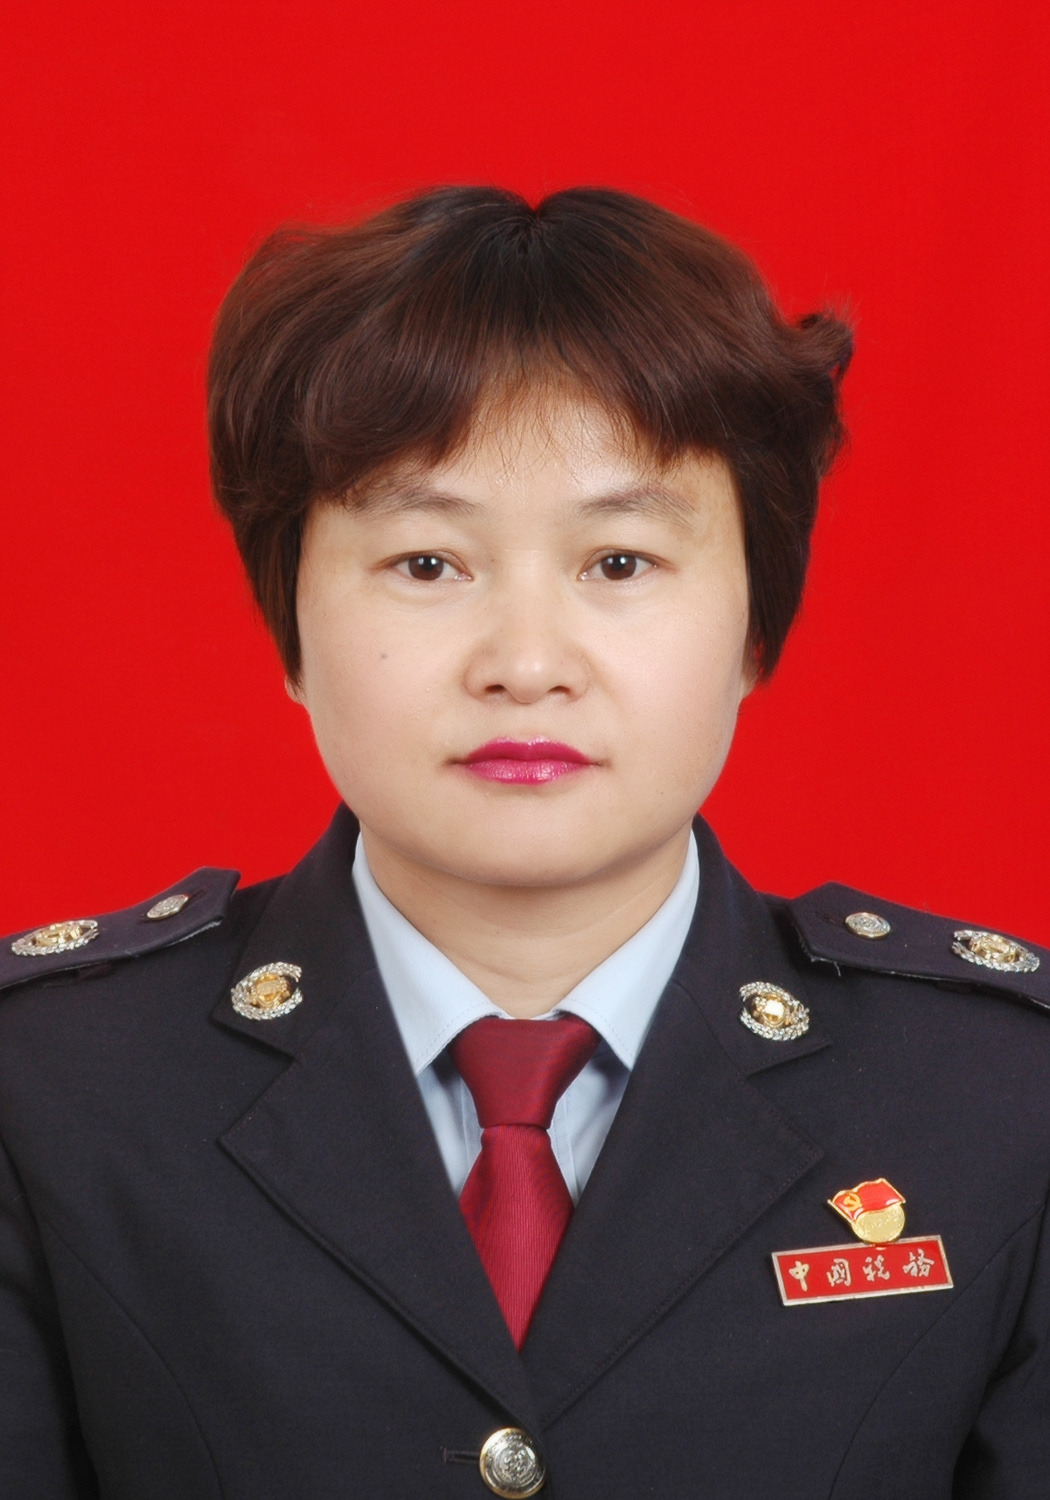 赵萍(党委委员,副局长) 赵萍,女,汉族,出生于1974年5月,籍贯:云南姚安